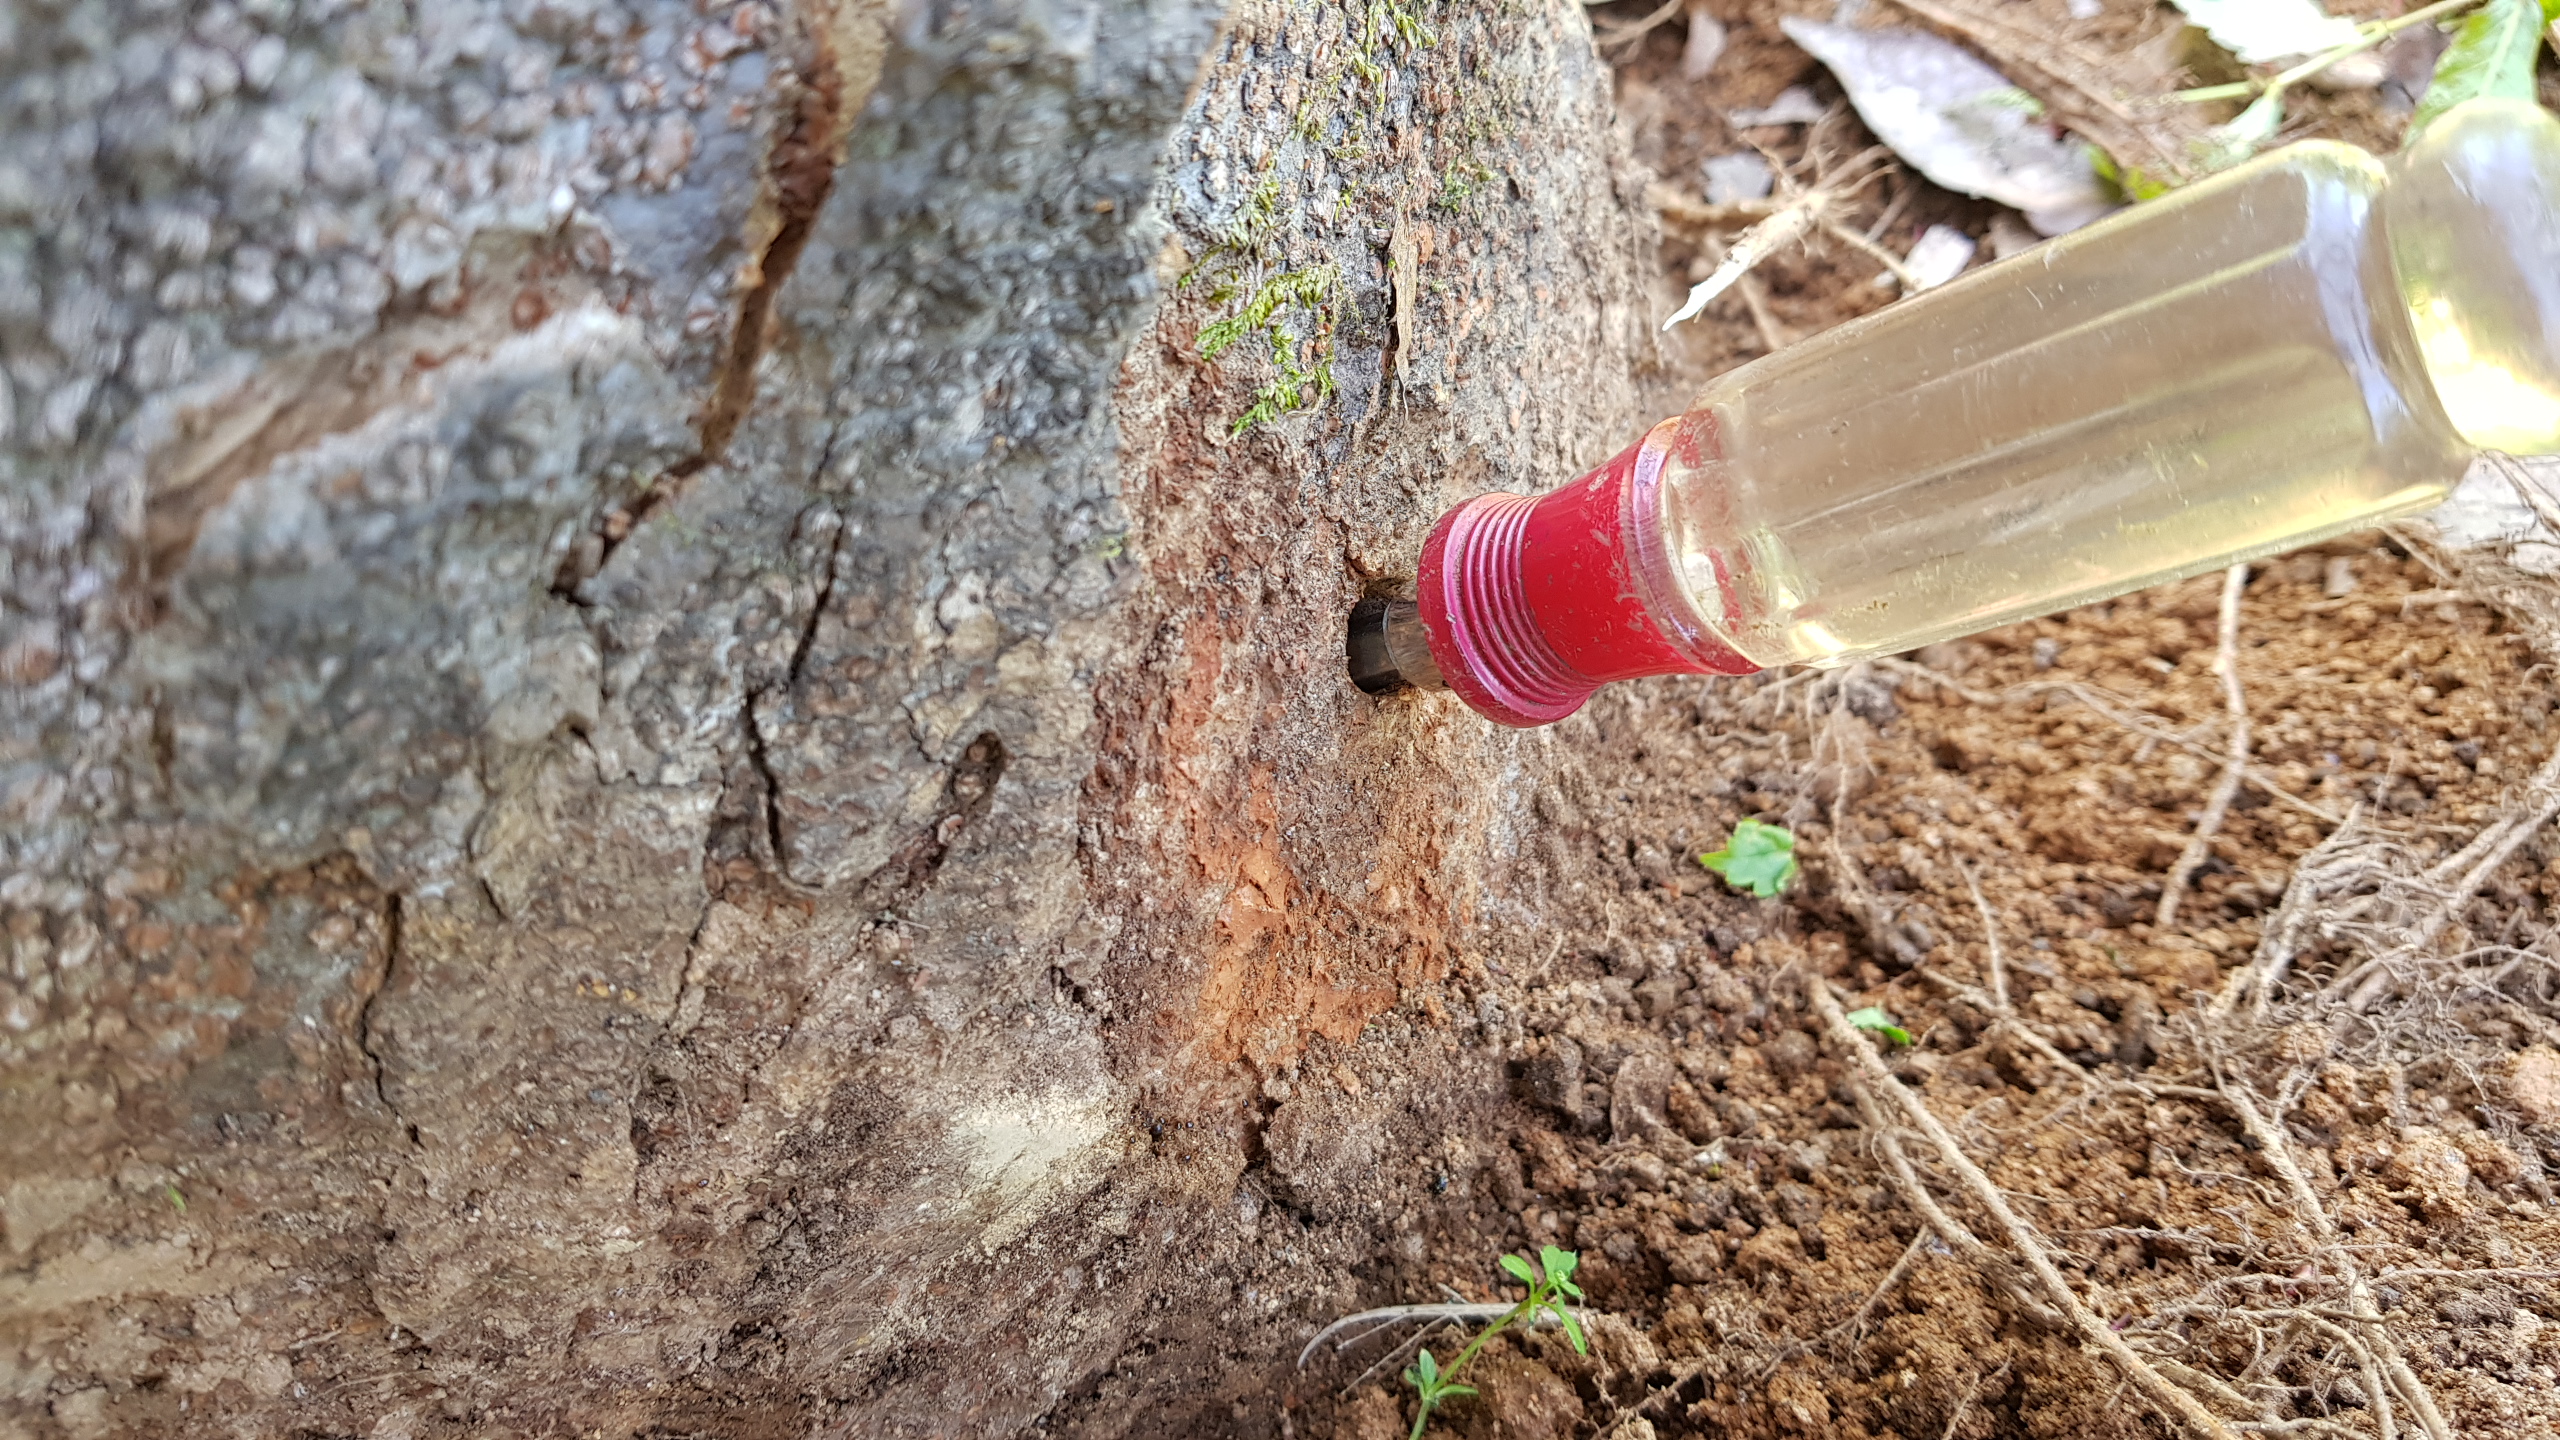 길이 15센티가량 되는 드라이버가 쑥 들어갈 정도로 깊게 파인 느티나무 보호수. 이러한 구멍이 나무 전체에 고루 14개가 뚫려 있다.